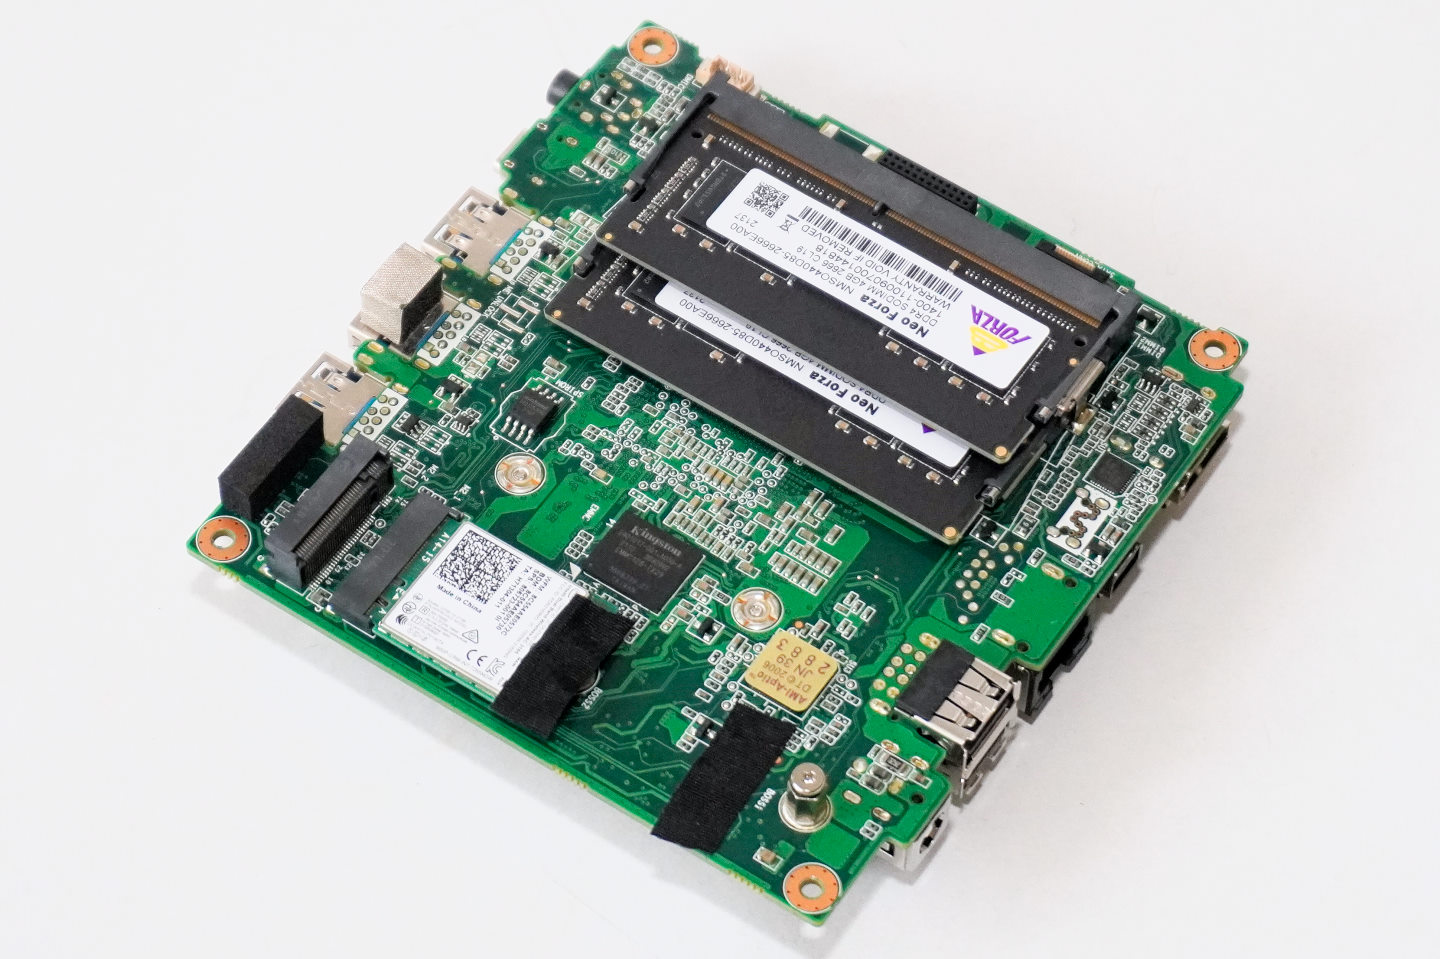 使用者也可以透過M.2 2280插槽擴充PCIe介面固態硬碟。